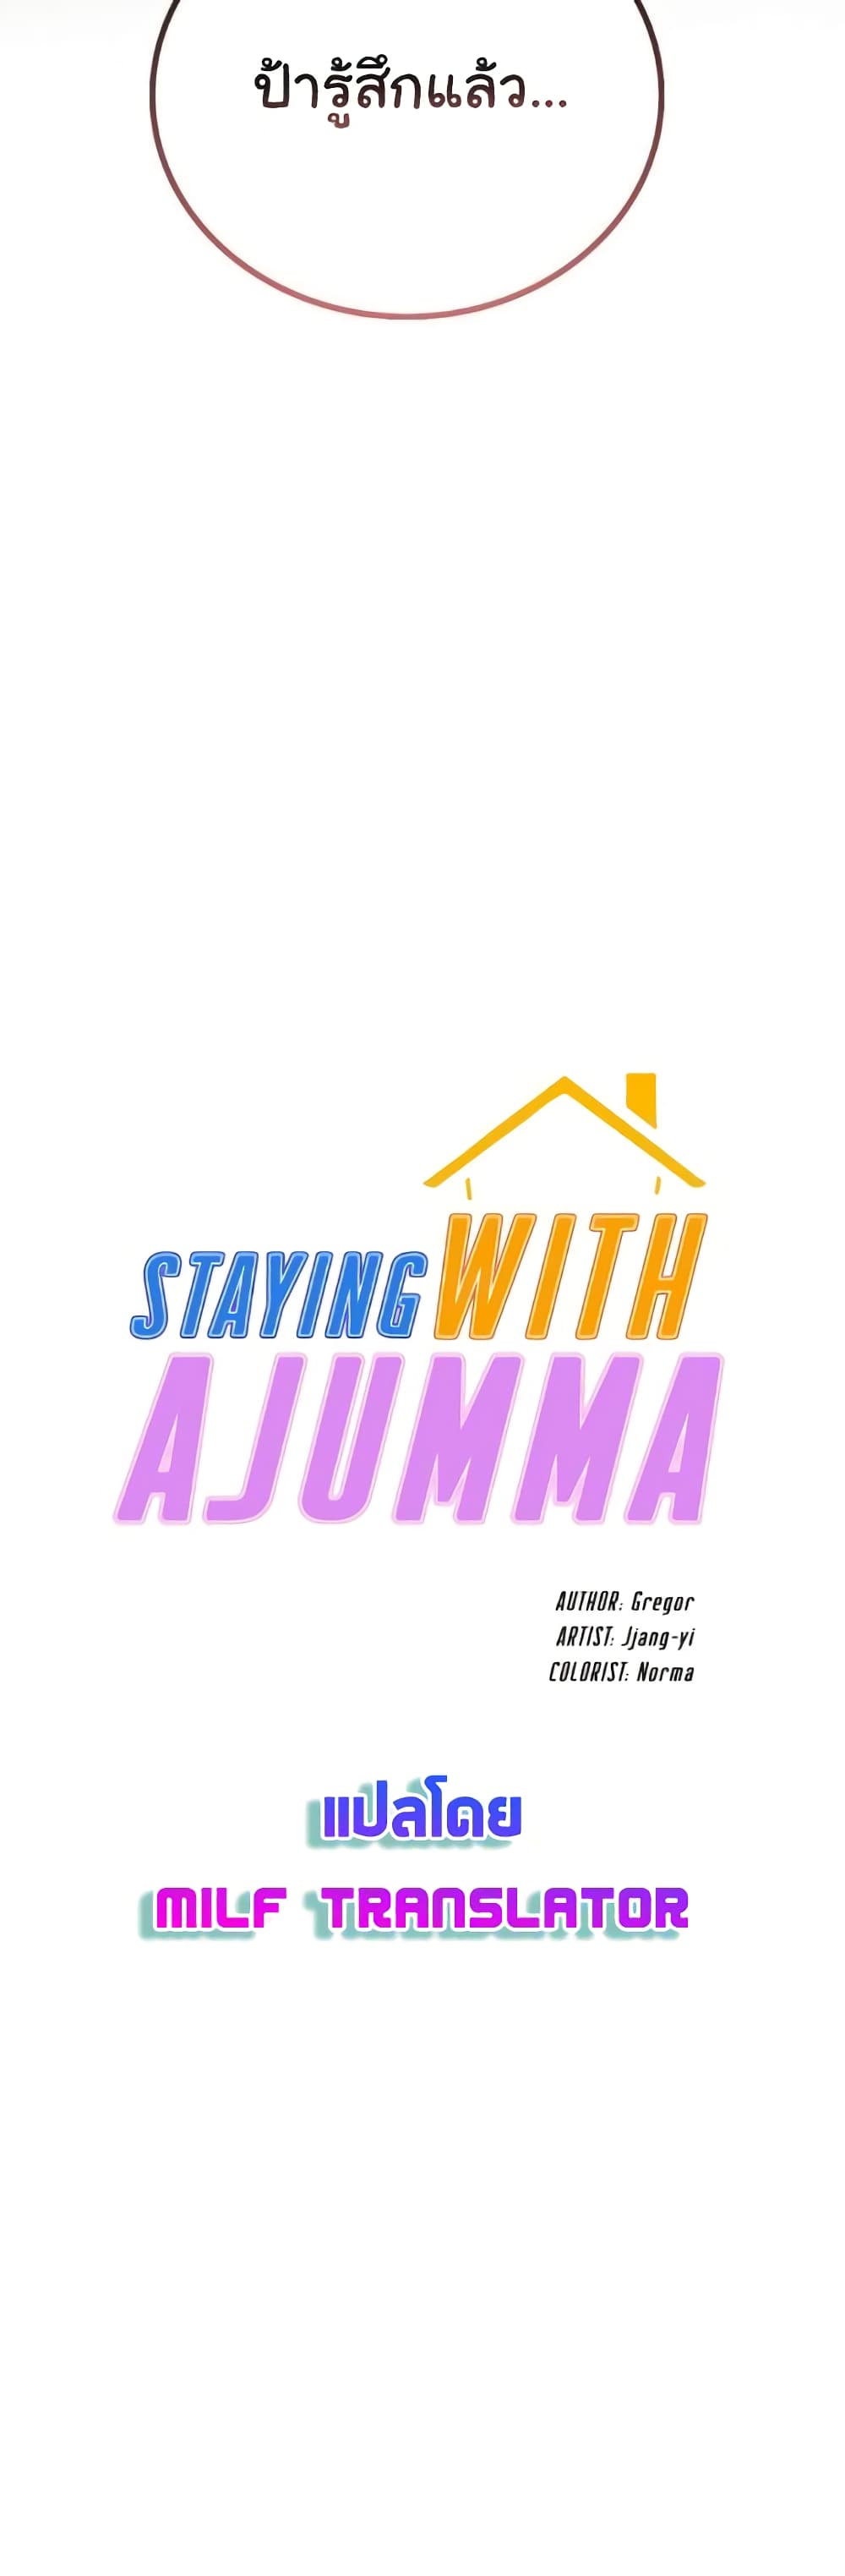 Staying with Ajumma 24-24